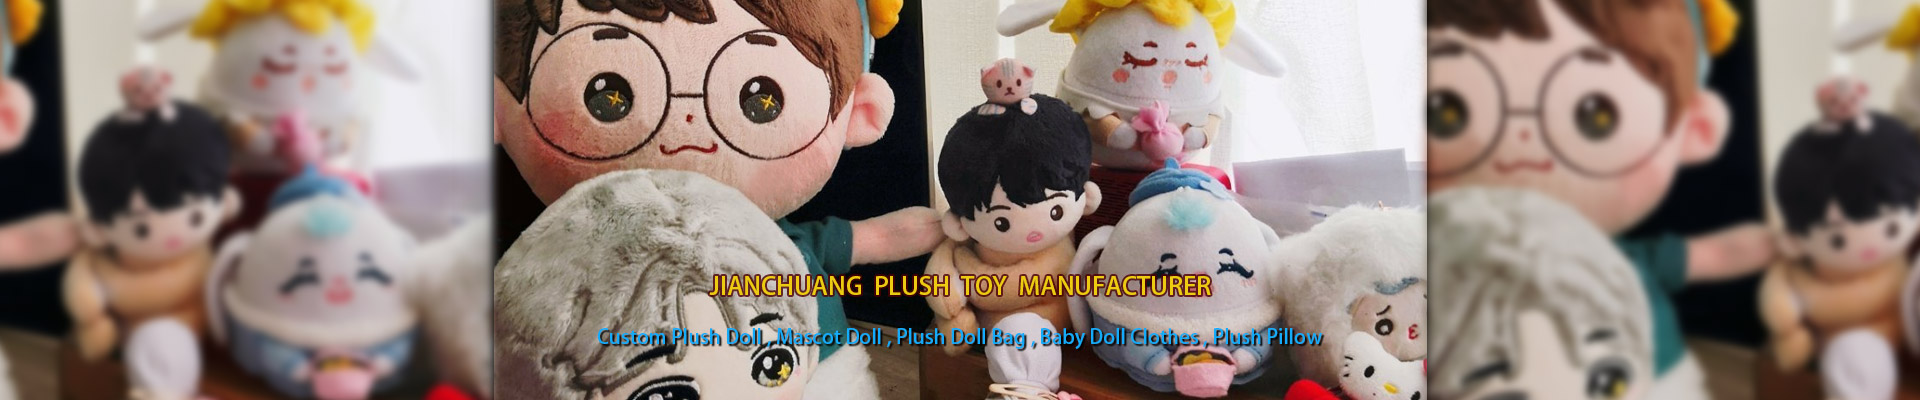 米国に連絡する - JianChuang おもちゃ工場